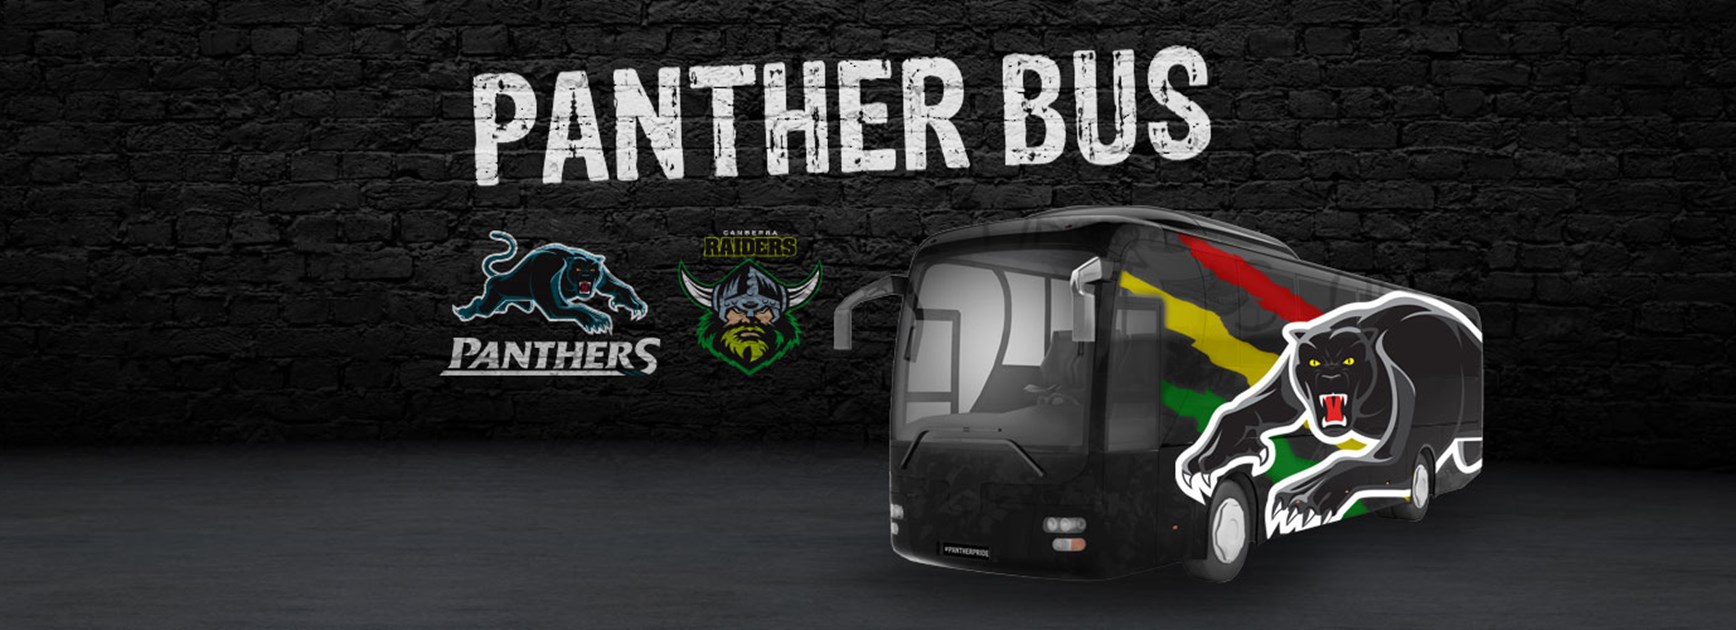 Panther Bus: Round 14